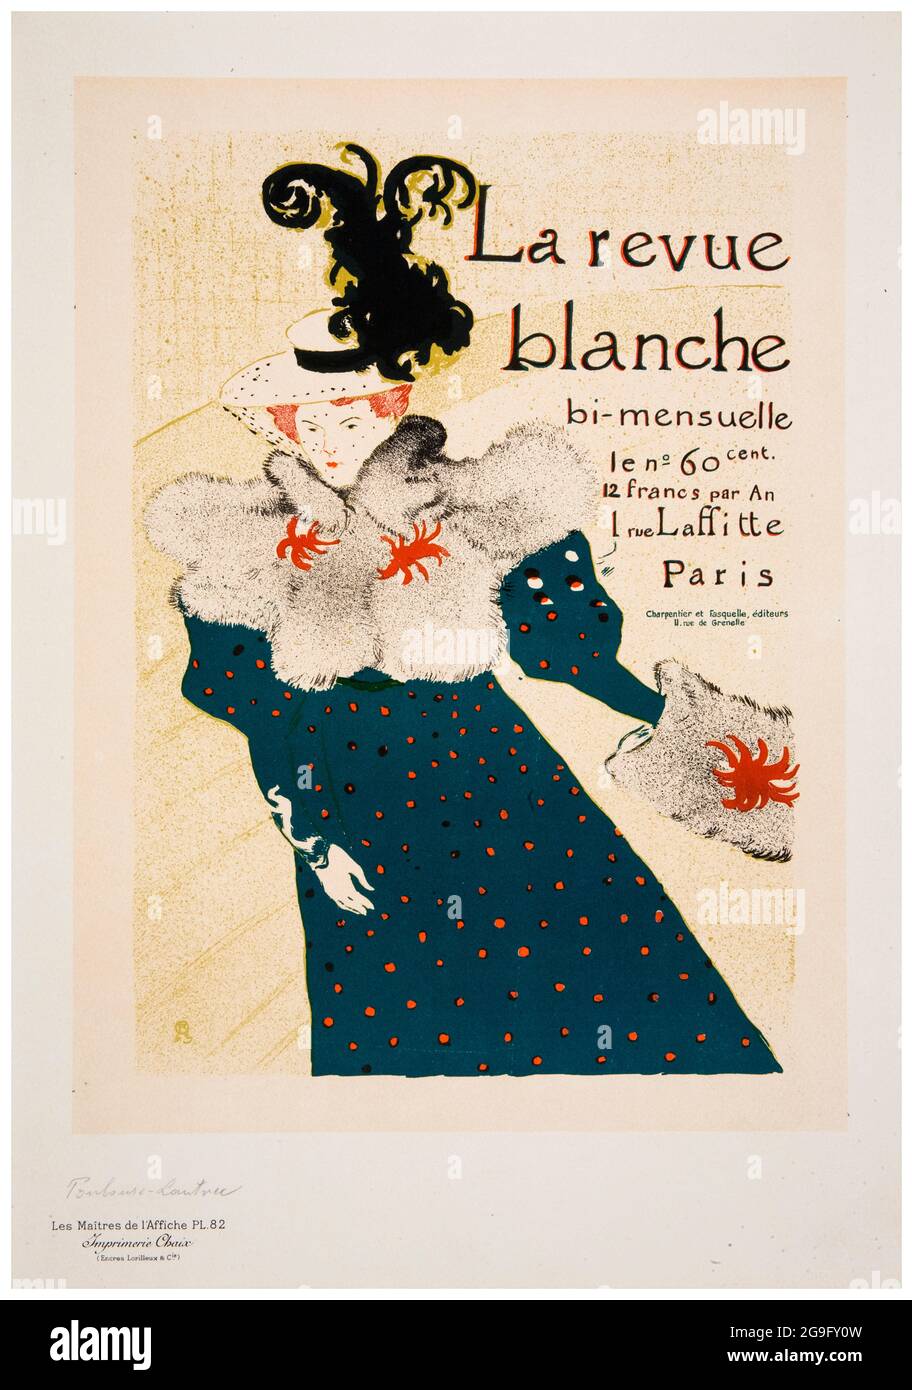 Henri de Toulouse-Lautrec, La Revue blanche (Les Maîtres de l'affiche), poster, 1895-1897 Stock Photo